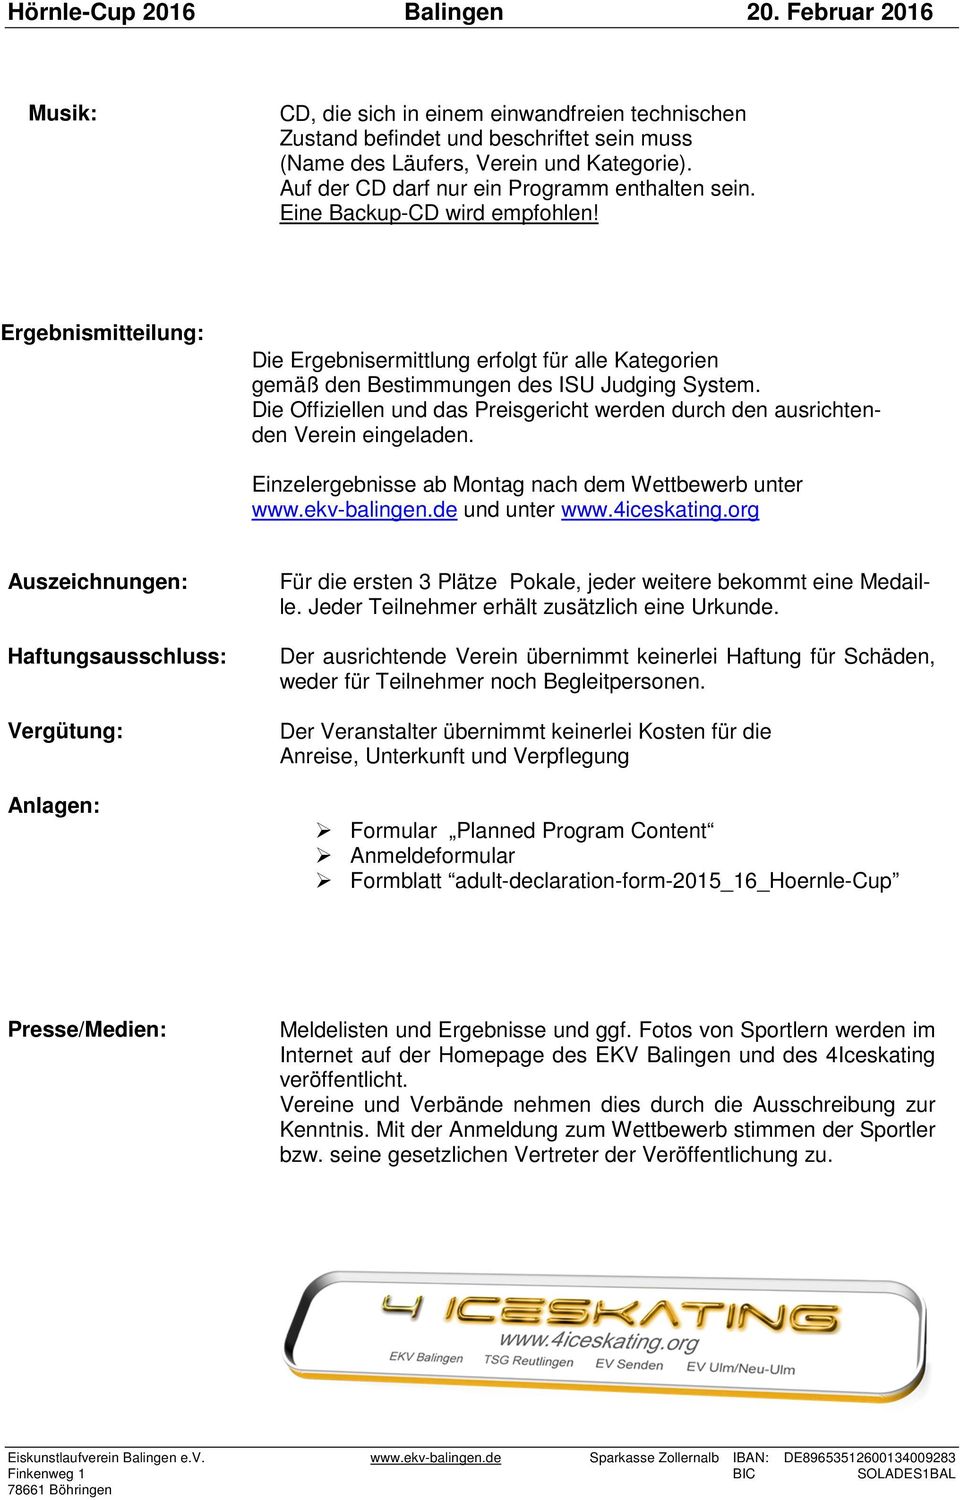 Die Offiziellen und das Preisgericht werden durch den ausrichtenden Verein eingeladen. Einzelergebnisse ab Montag nach dem Wettbewerb unter www.ekv-balingen.de und unter www.4iceskating.